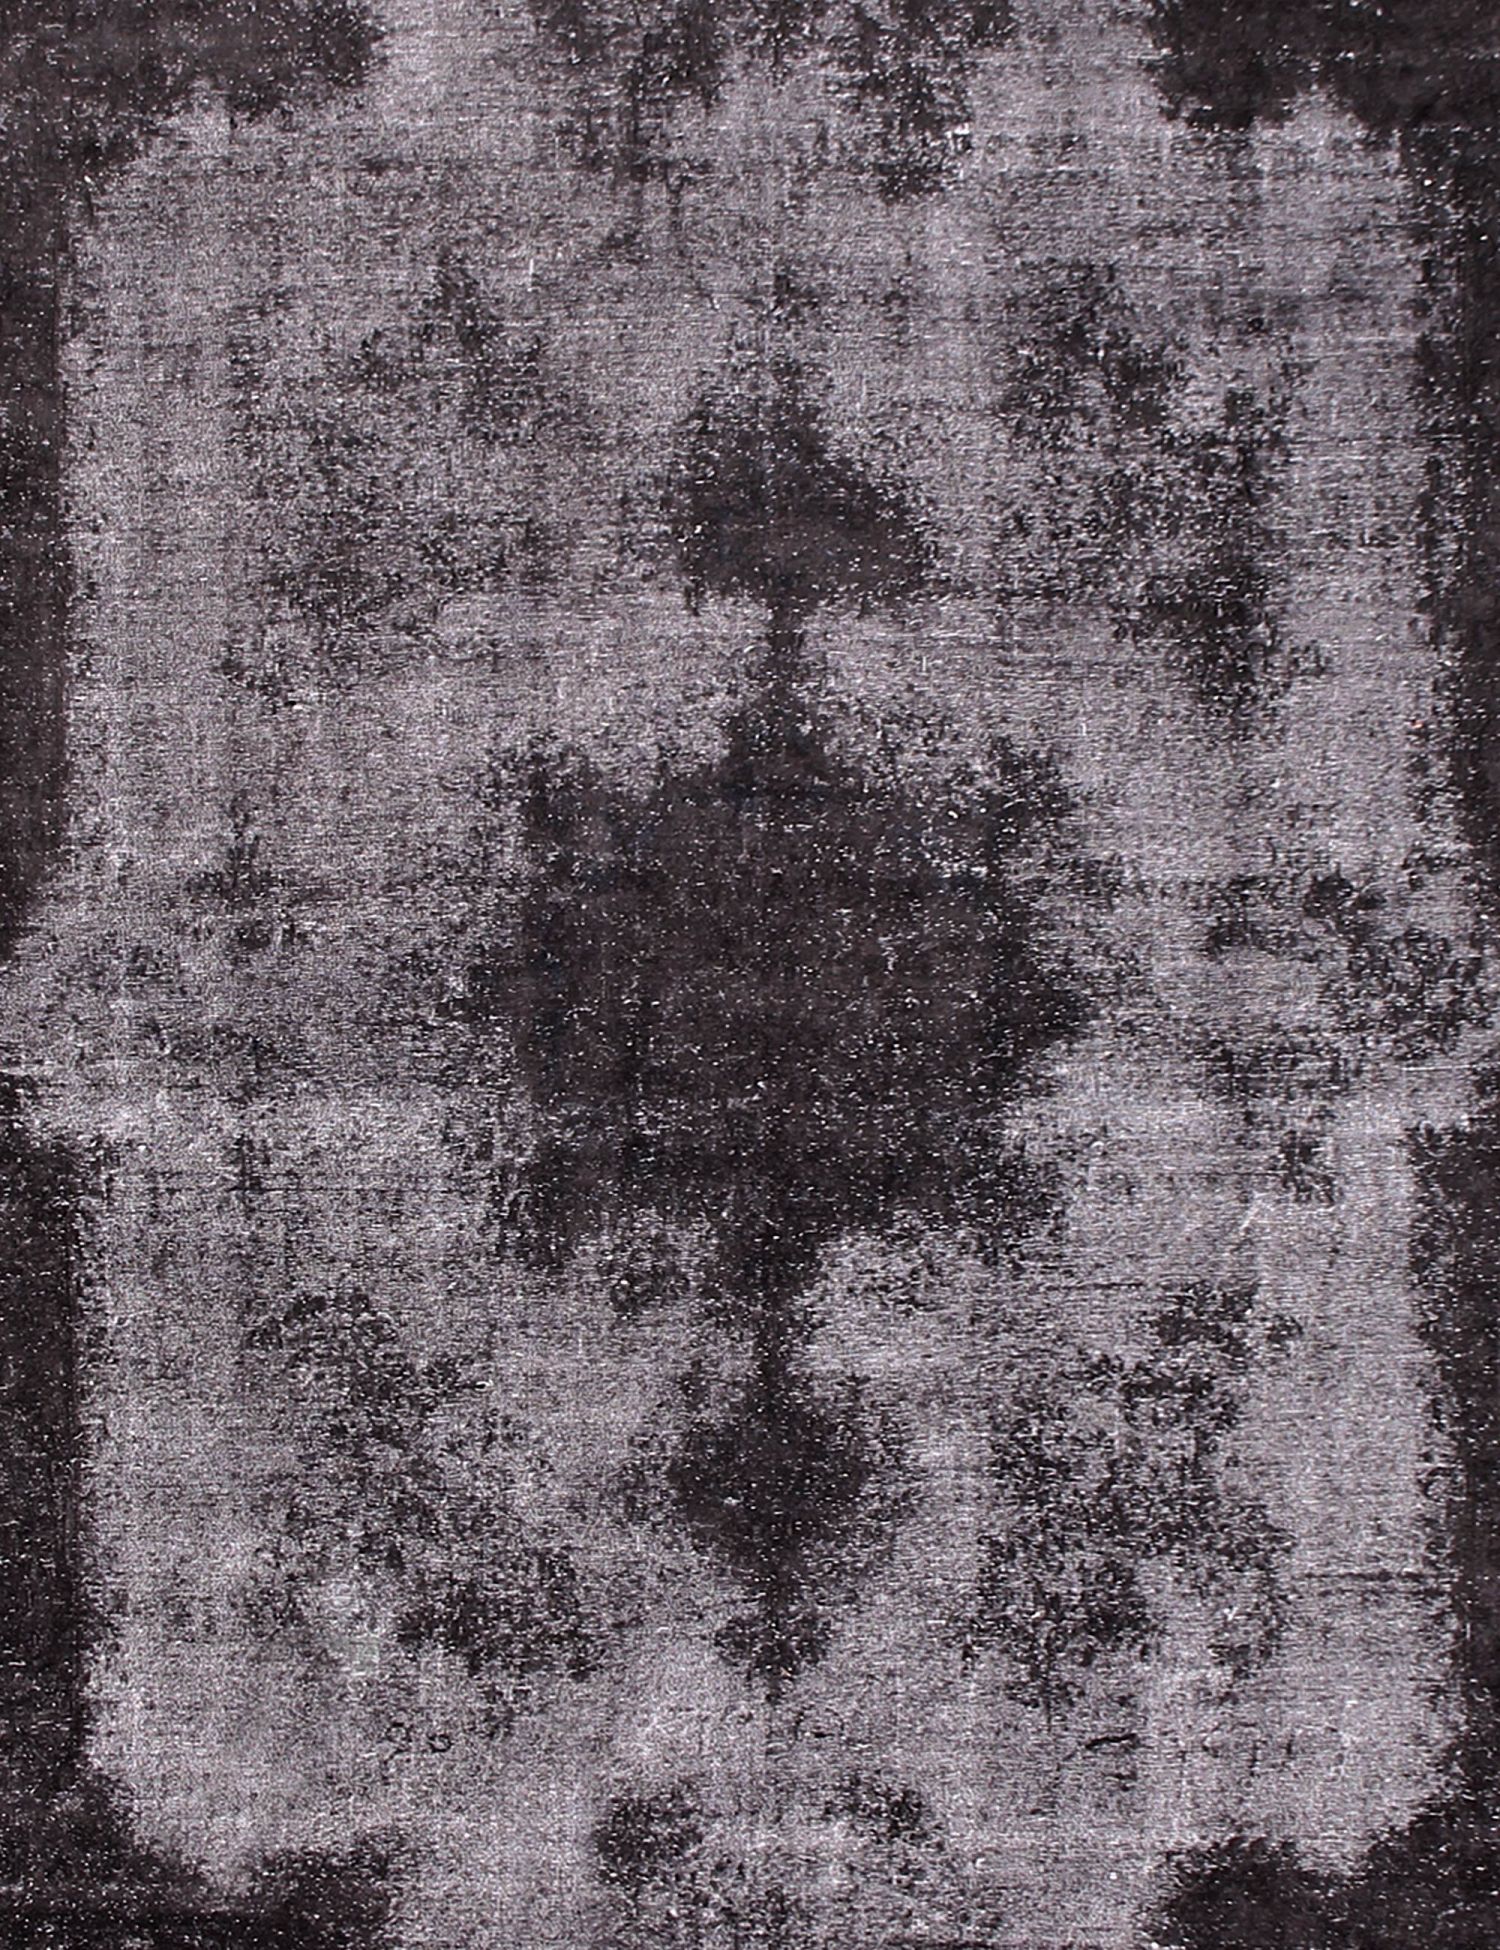 Persian Vintage Carpet  black <br/>540 x 340 cm